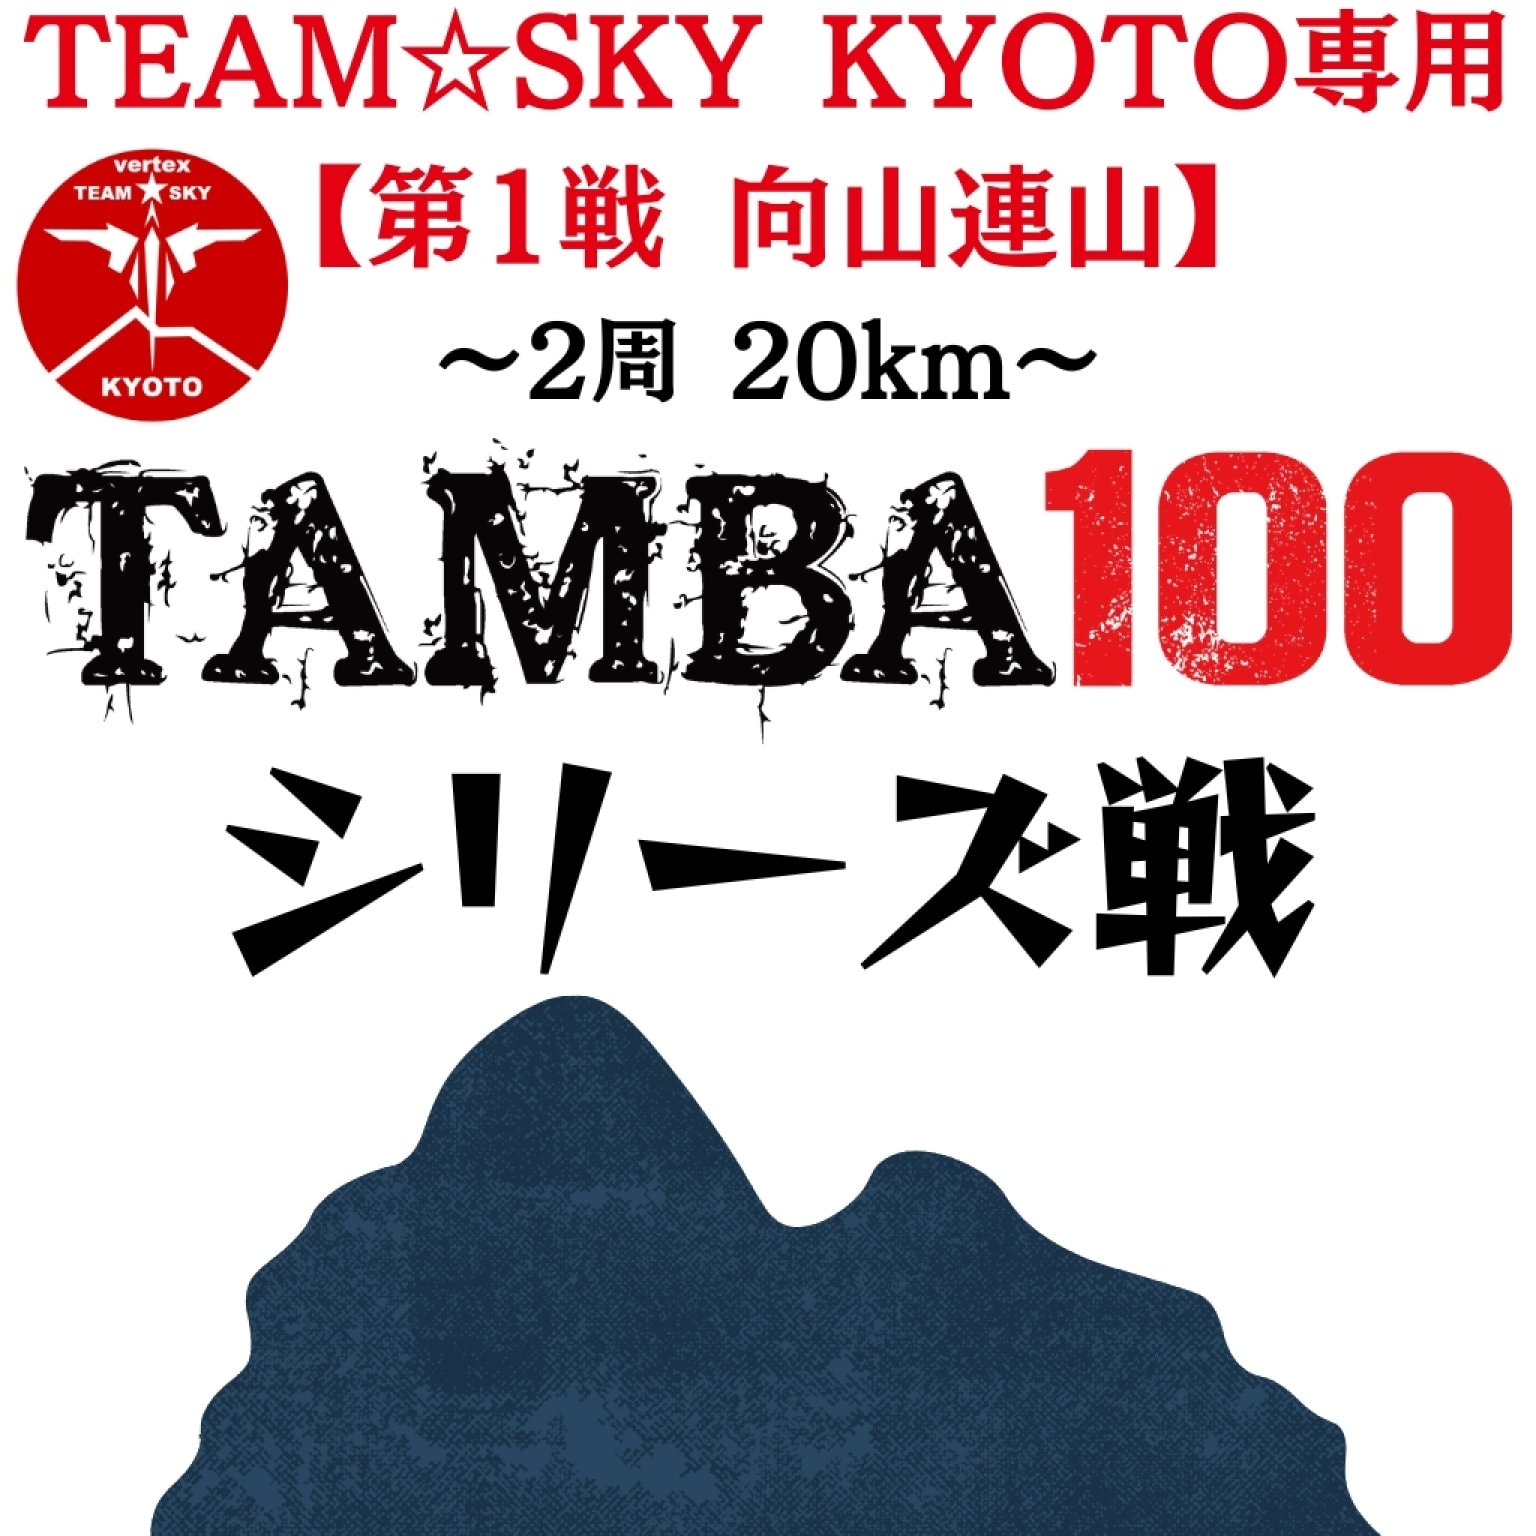 ※TEAM☆SKY KYOTO専用 TAMBA 第1戦 〜向山連山ラウンドトレイル〜2周20km エントリー